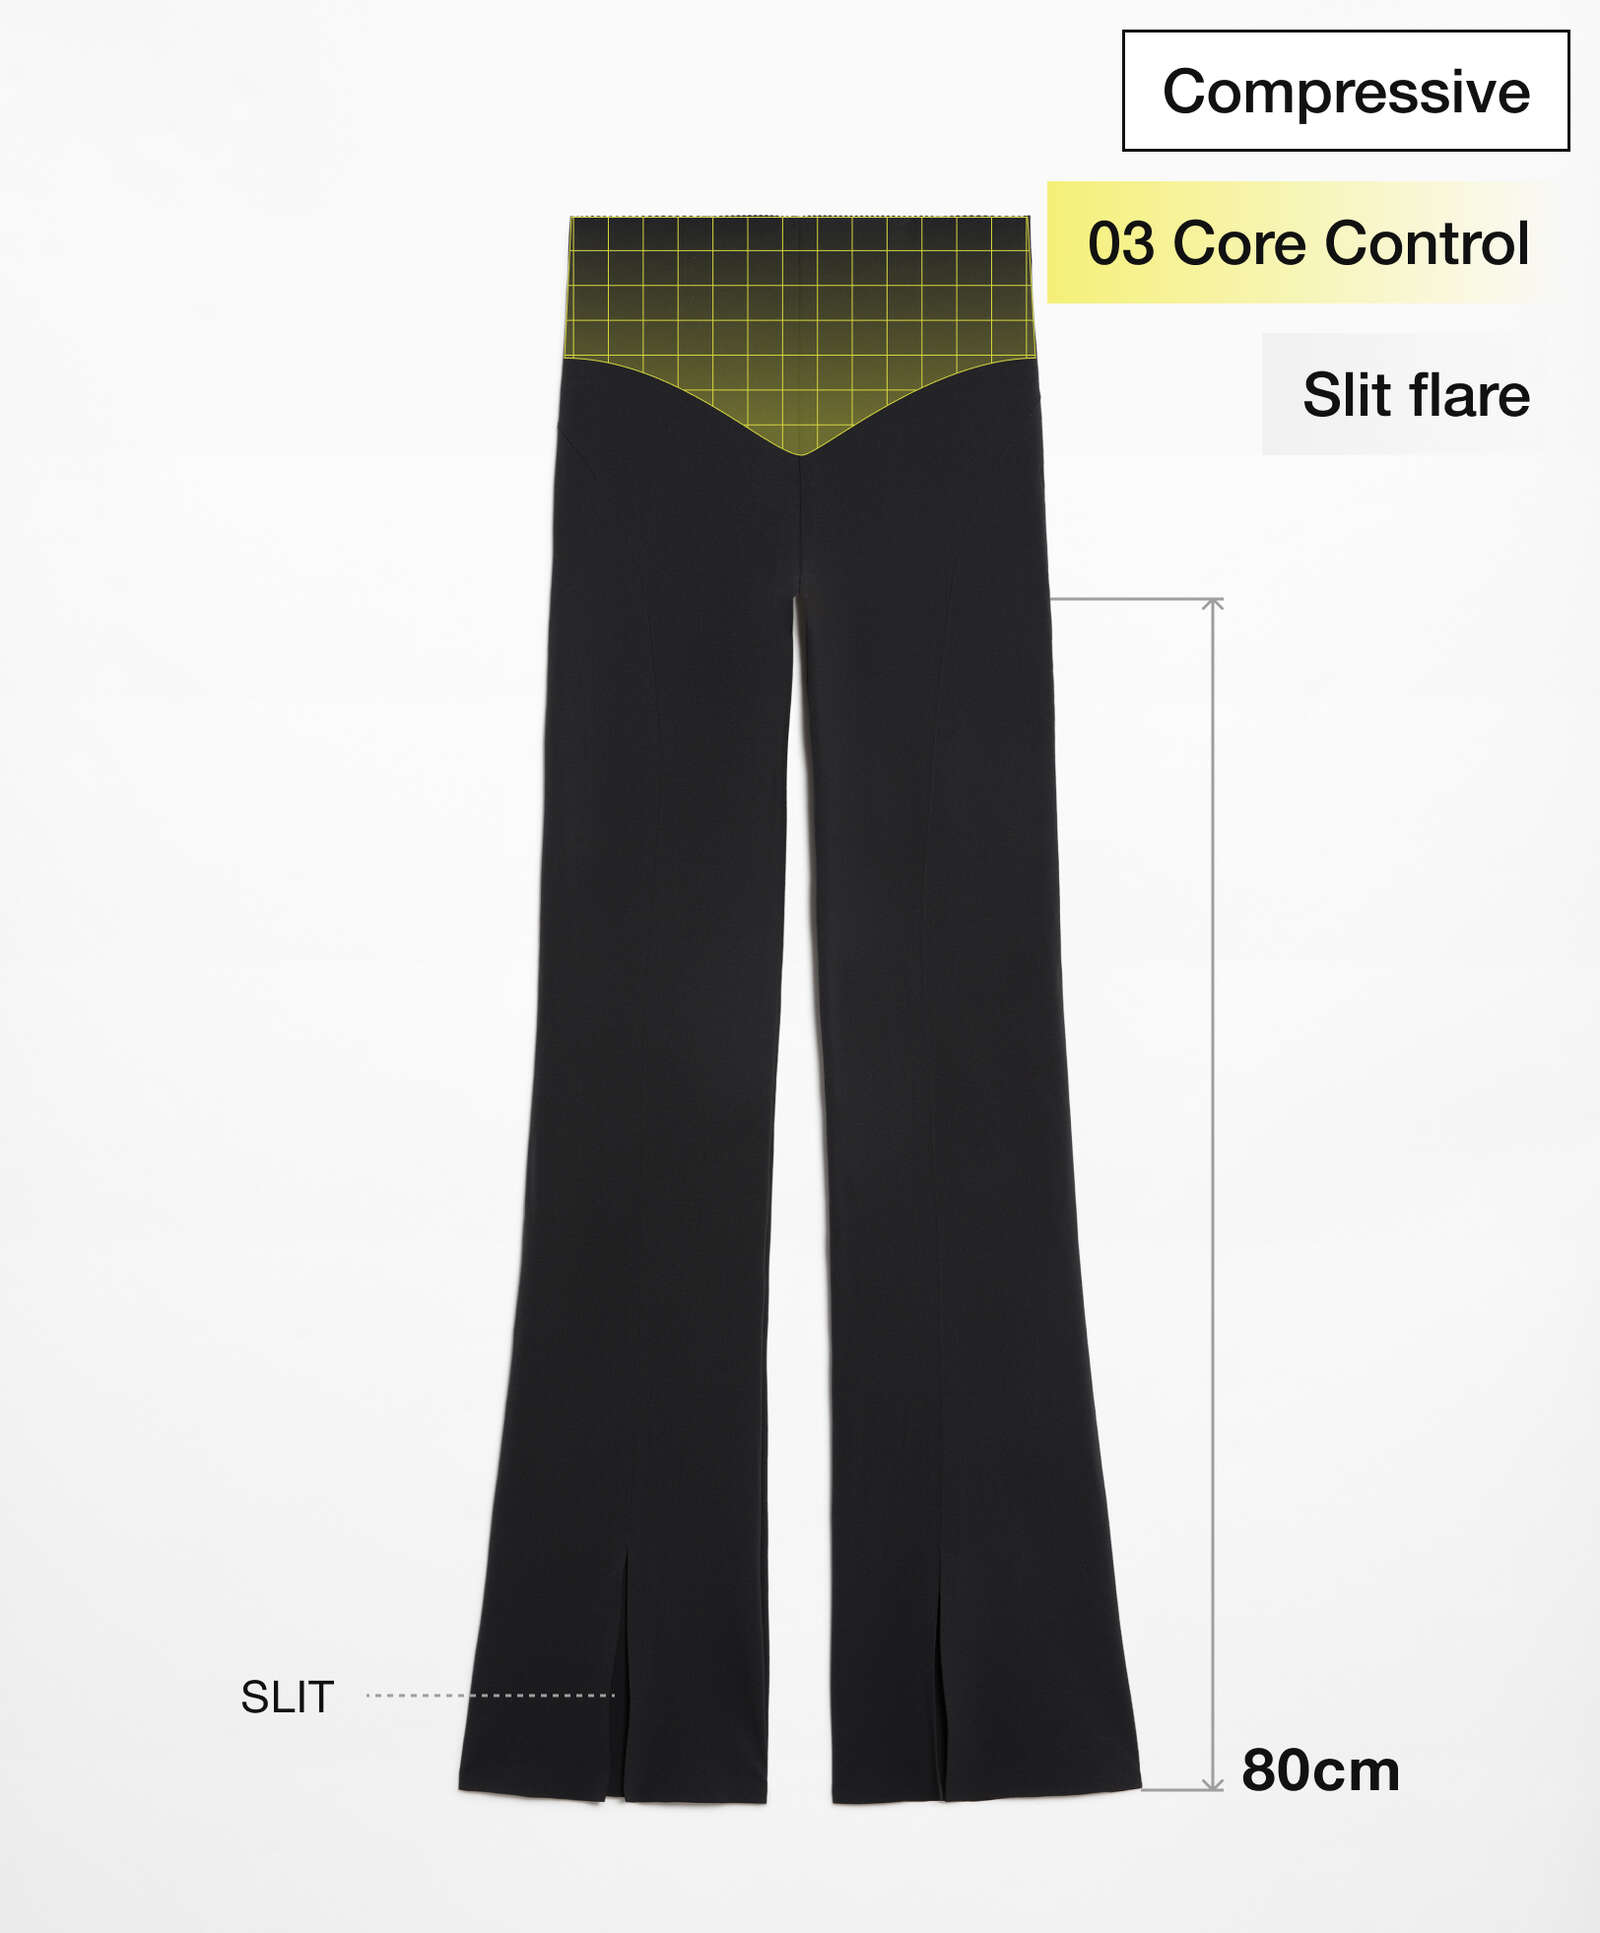 Compressive core control slit flare trousers